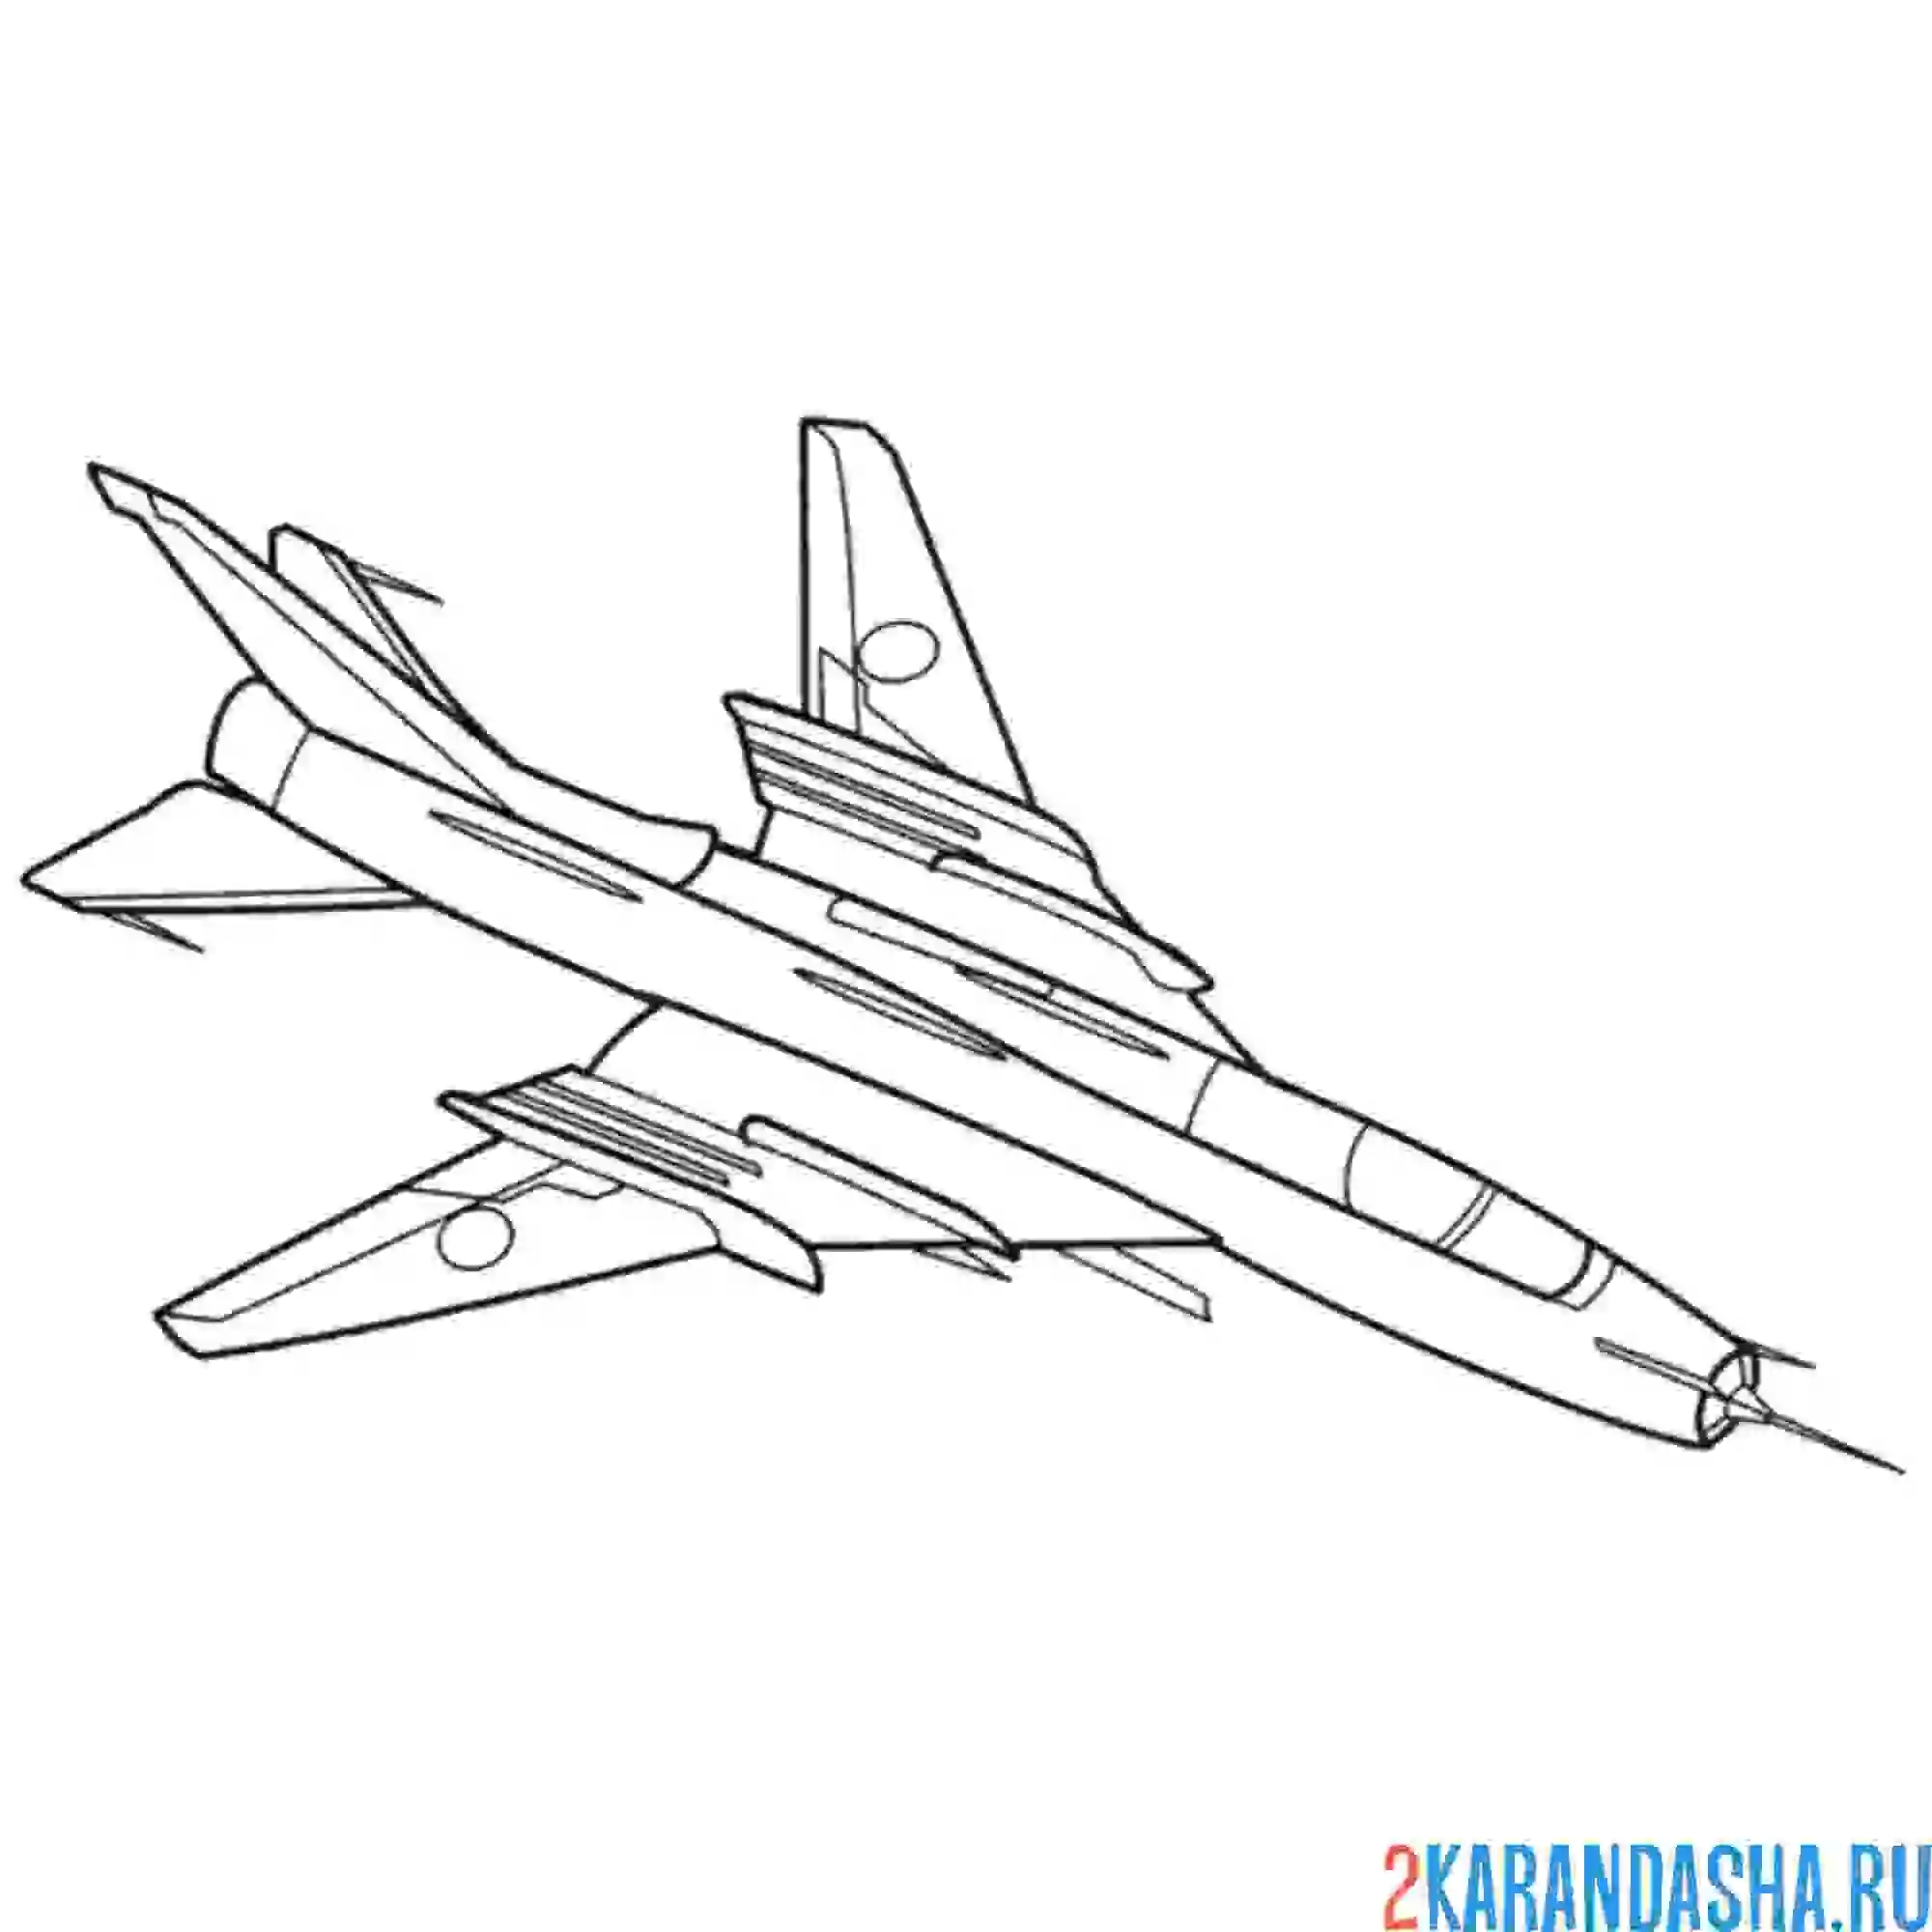 Раскраска сухой су-22 российский истребитель-бомбардировщик